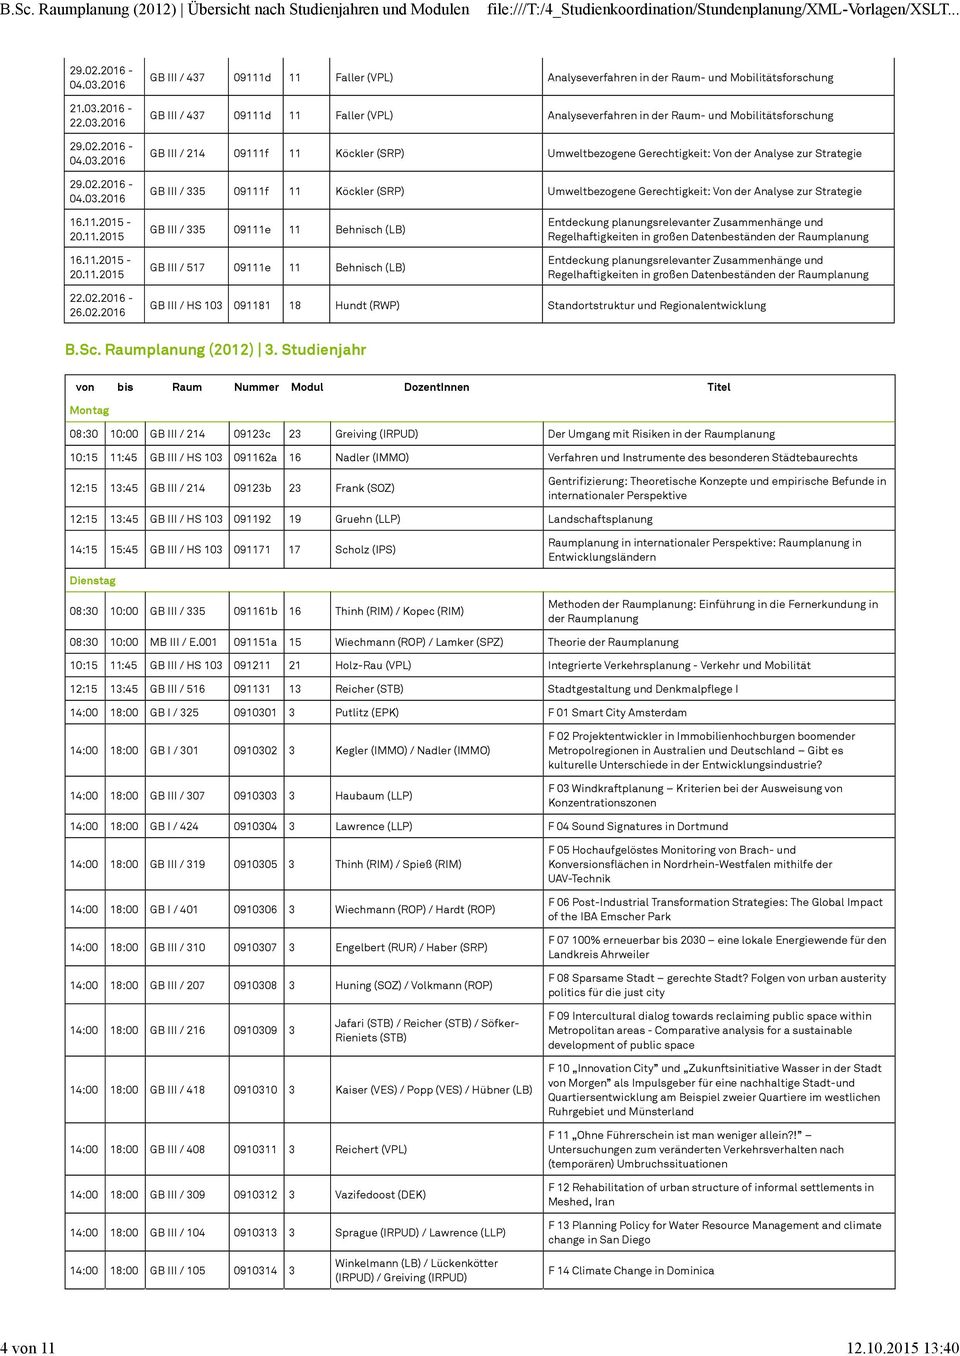 2016 GB III / 437 09111d 11 Faller Analyseverfahren in der Raum- und Mobilitätsforschung GB III / 437 09111d 11 Faller Analyseverfahren in der Raum- und Mobilitätsforschung GB III / 214 09111f 11